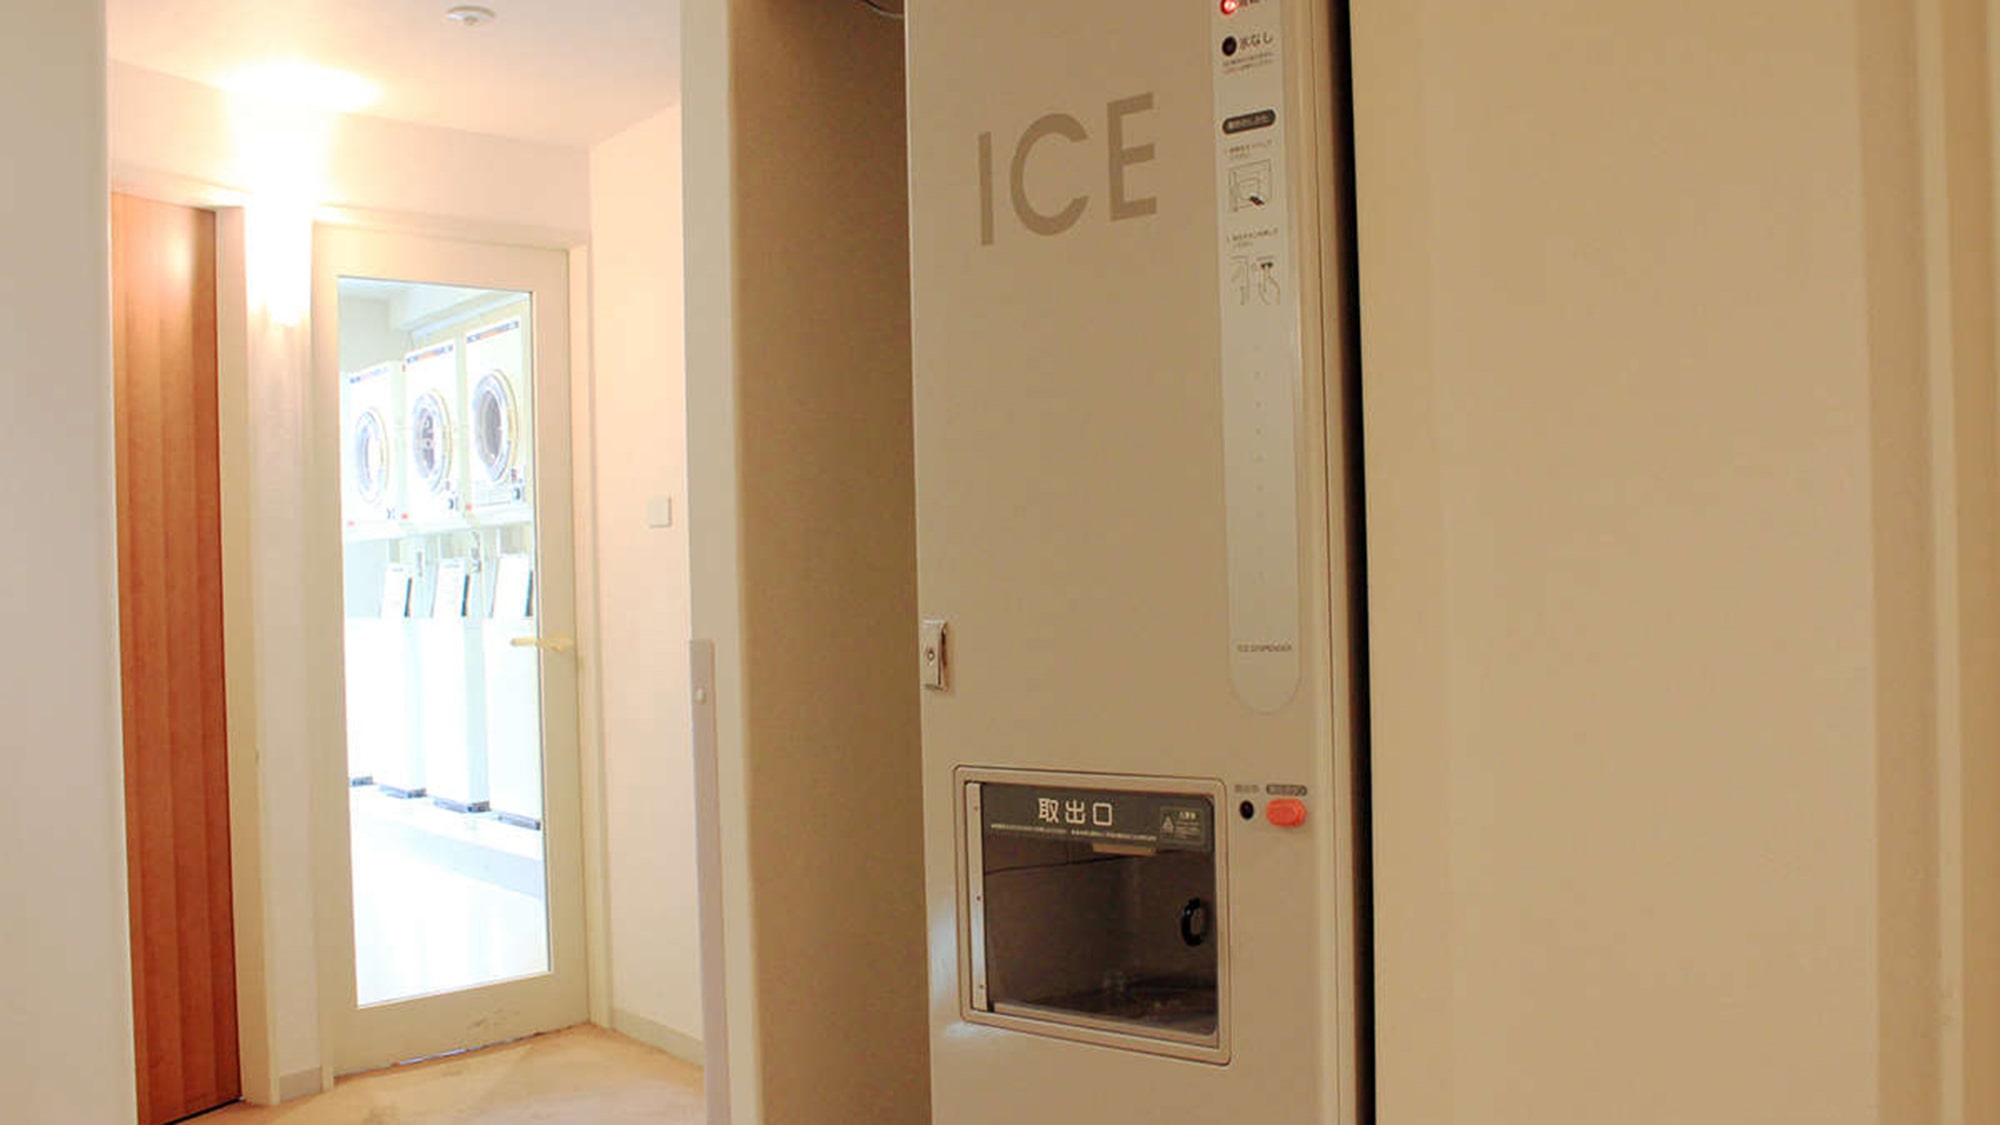 ホテル3階と24階には製氷機をご用意しております。